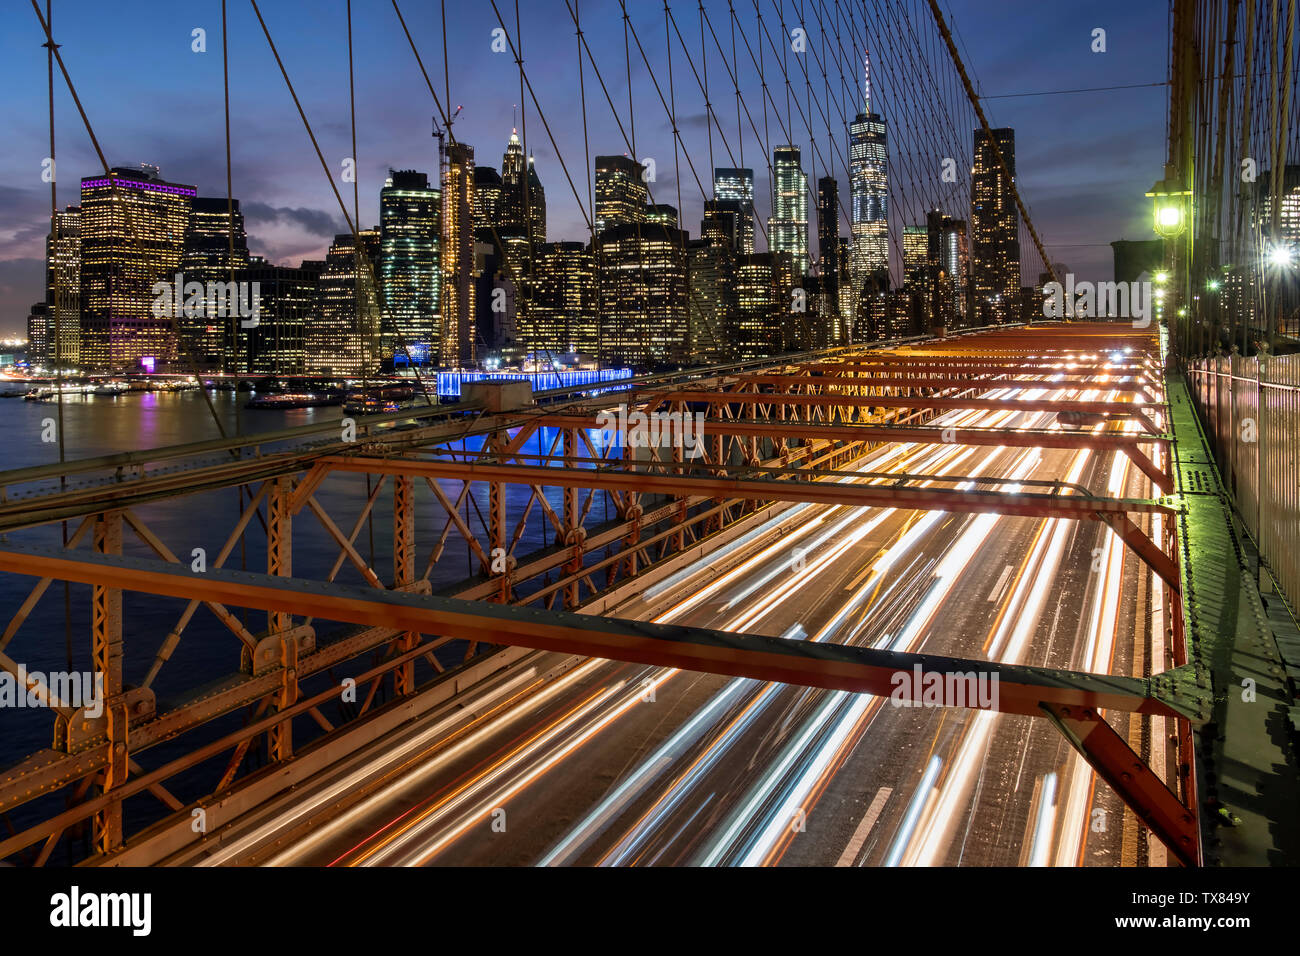 Le trafic traversant le pont de Brooklyn soutenu par la Manhattan skyline at night, New York, USA Banque D'Images